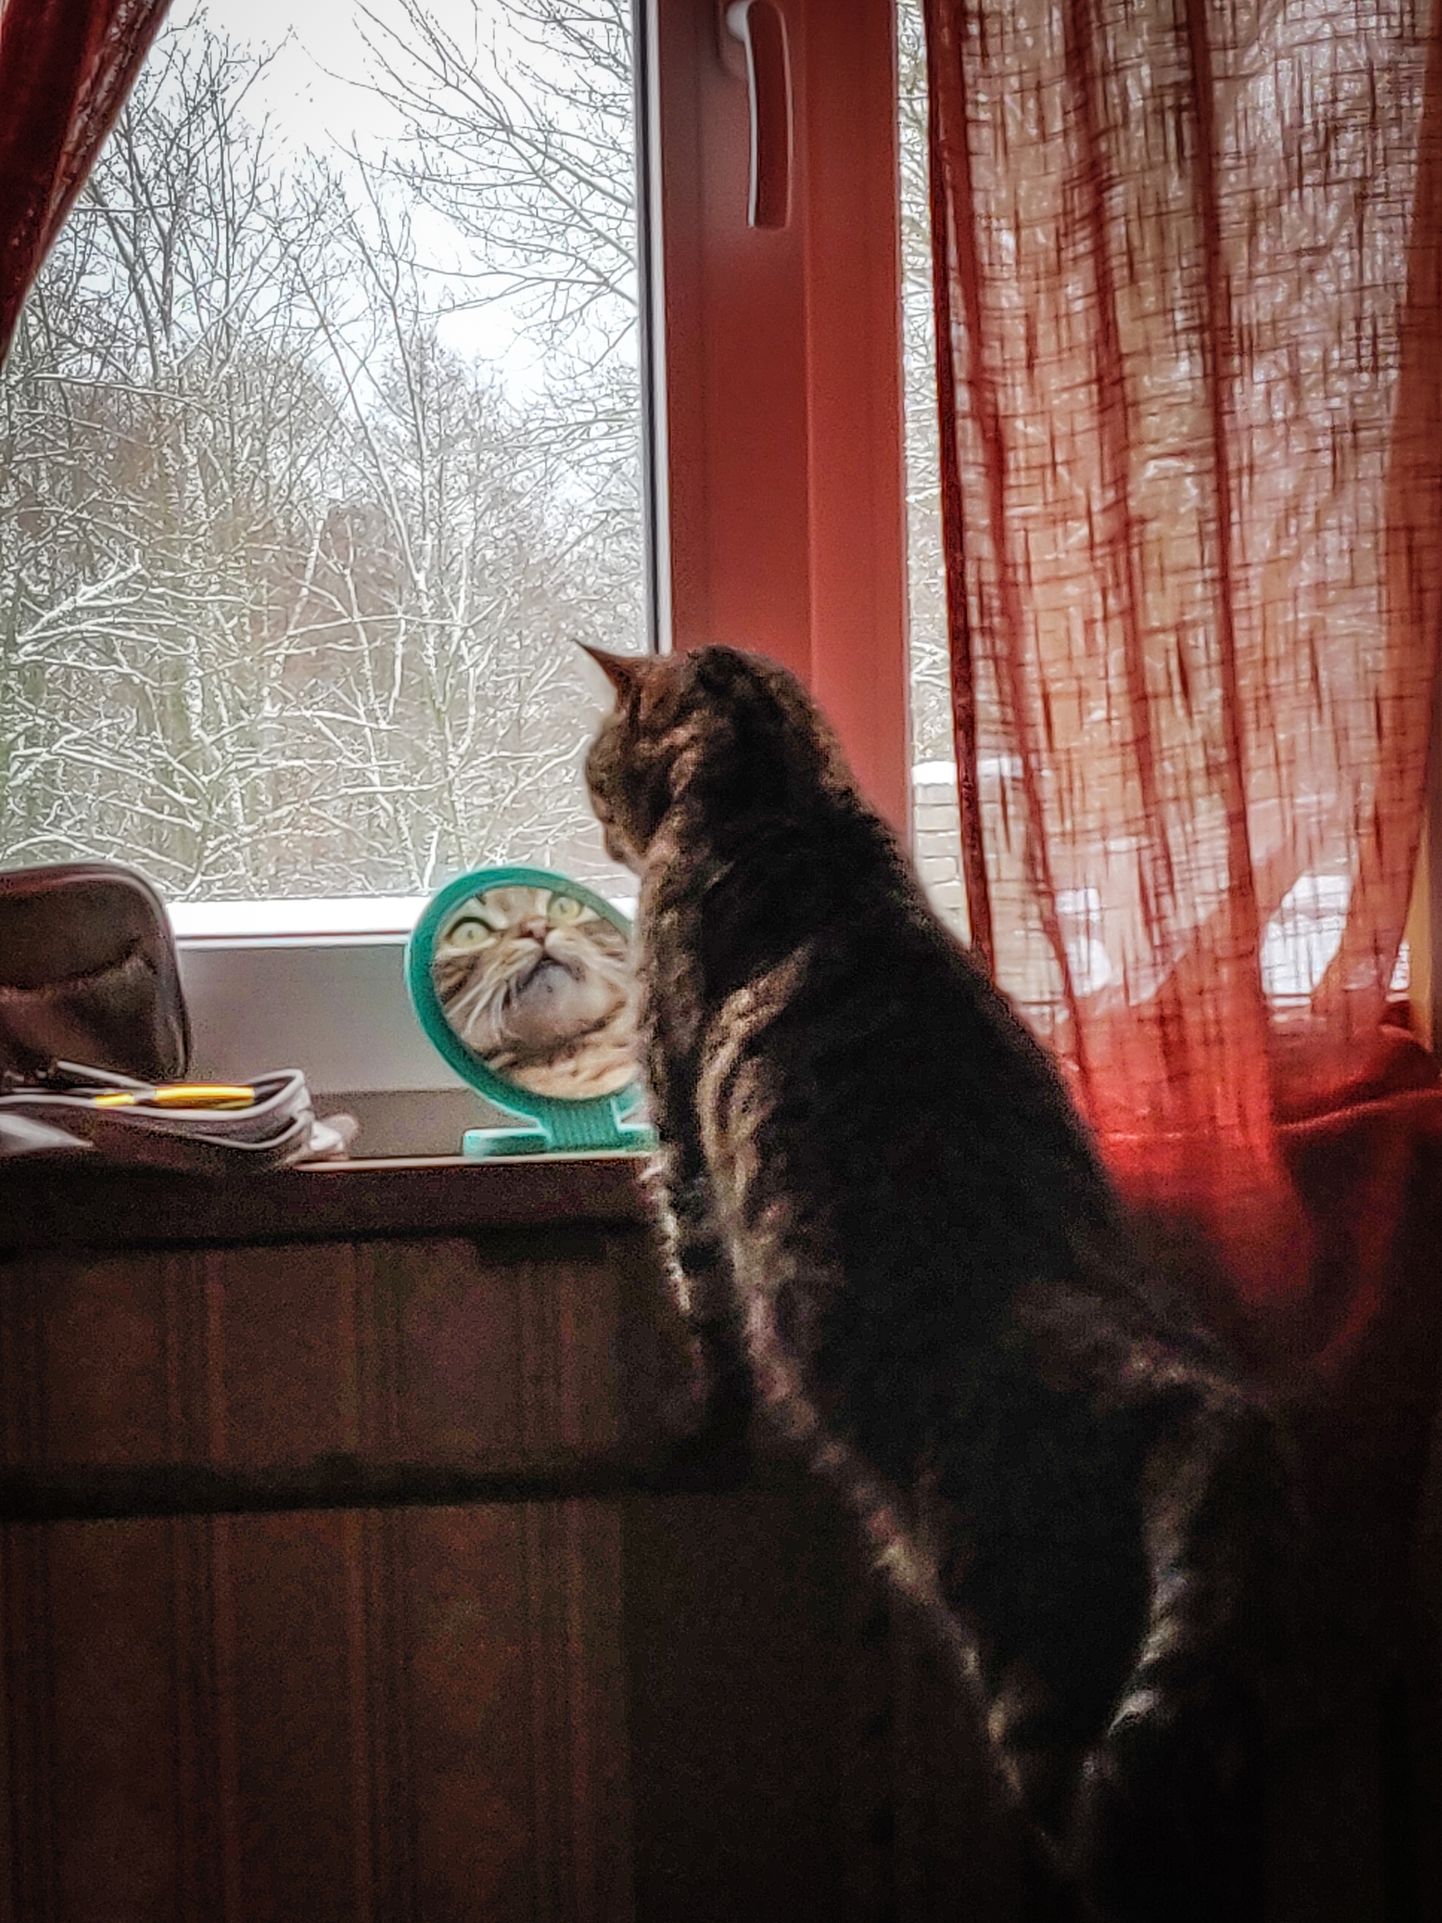 Kass imetleb end peeglist.  FOTO: Lauri Põlluäär